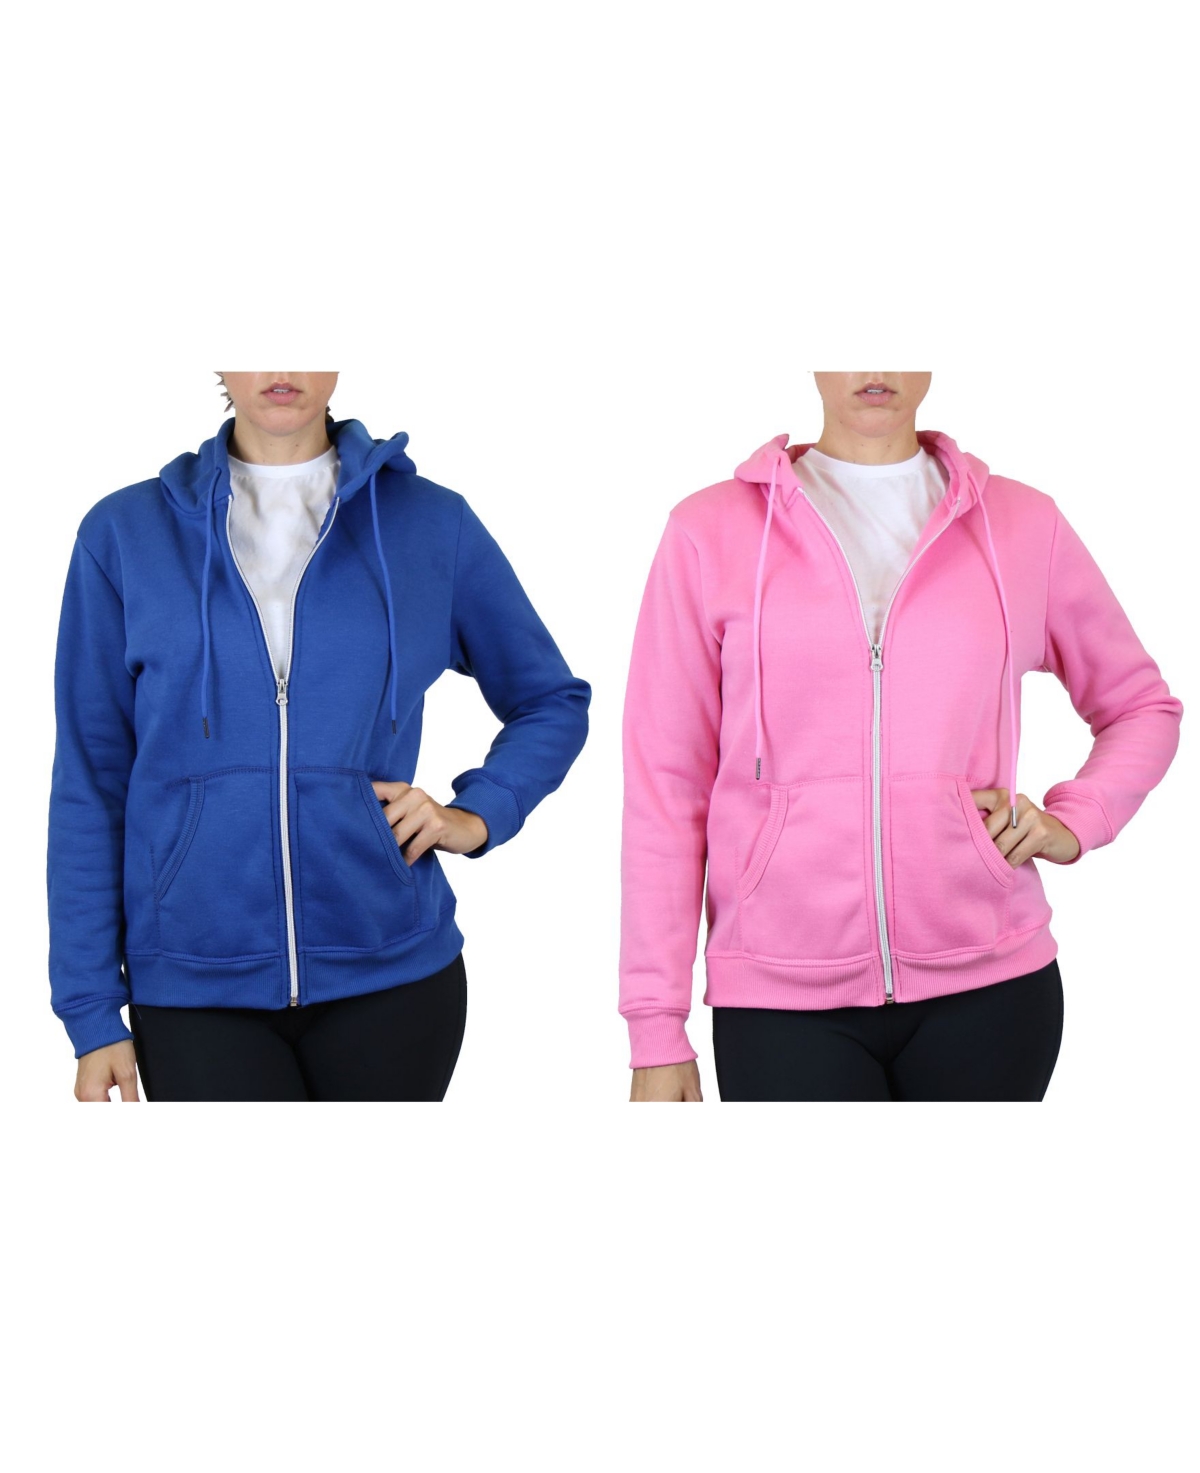 Women's Fleece Lined Zip Hoodie, Pack of 2 - Medium Blue Pink